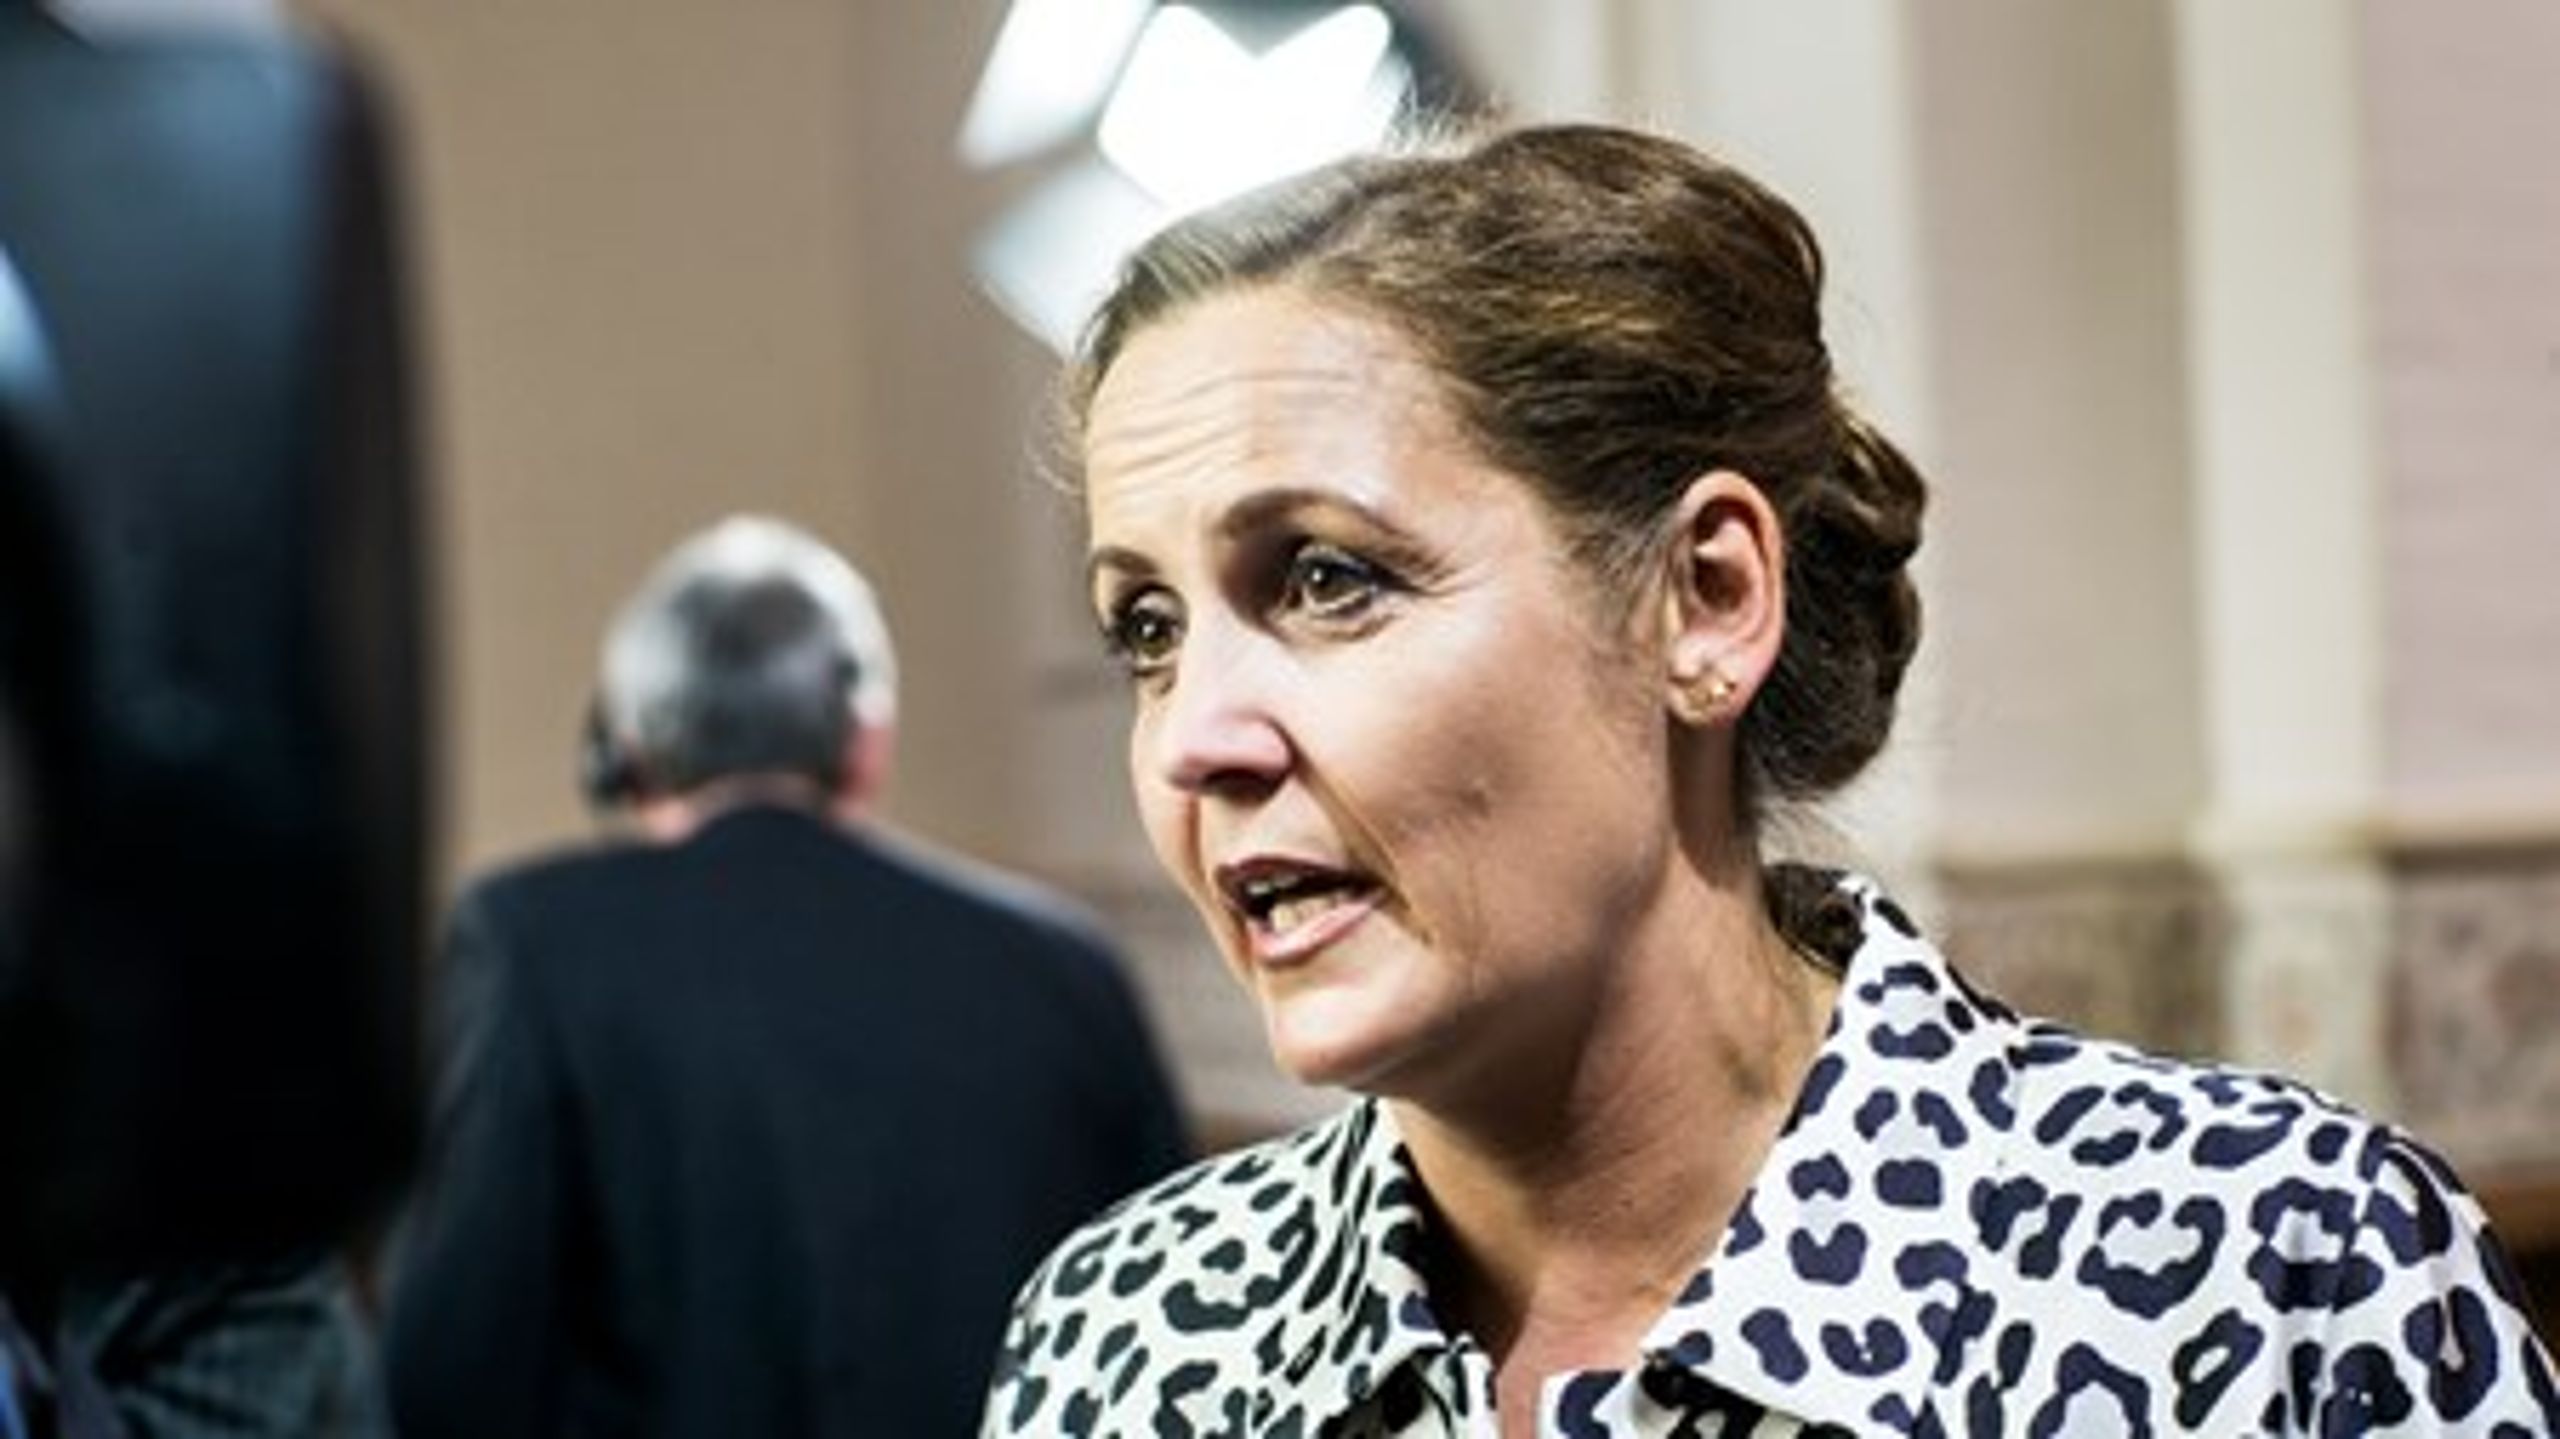 Der blev skudt med skarpt mod særligt Venstre og regeringen i Pia Olsen Dyhrs landsmødetale lørdag.